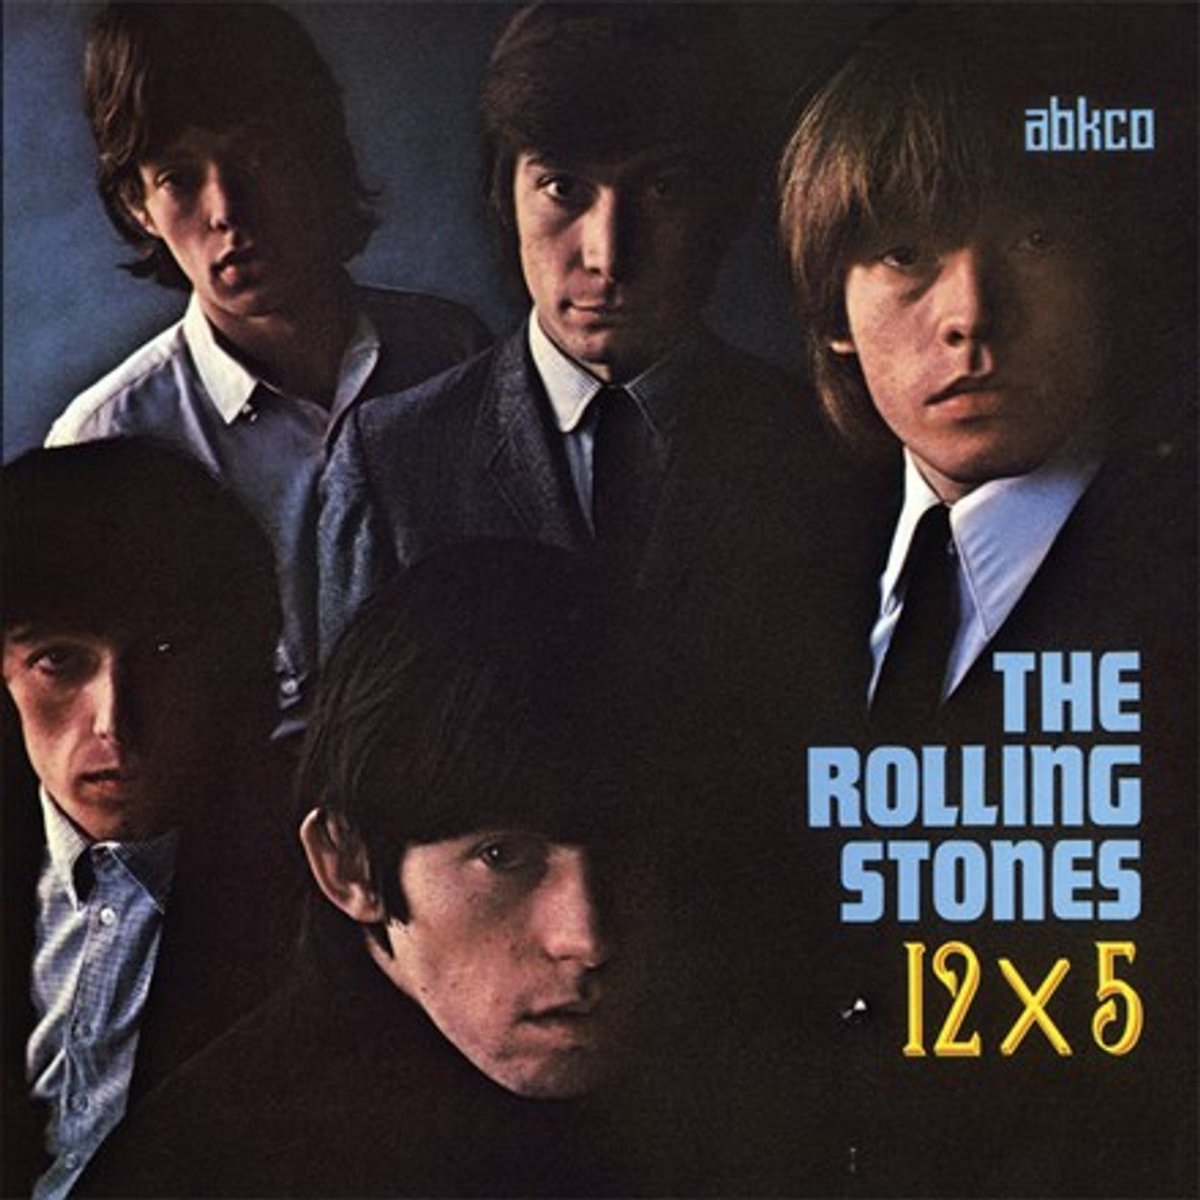 The Rolling Stones - 12 X 5 Vinyl